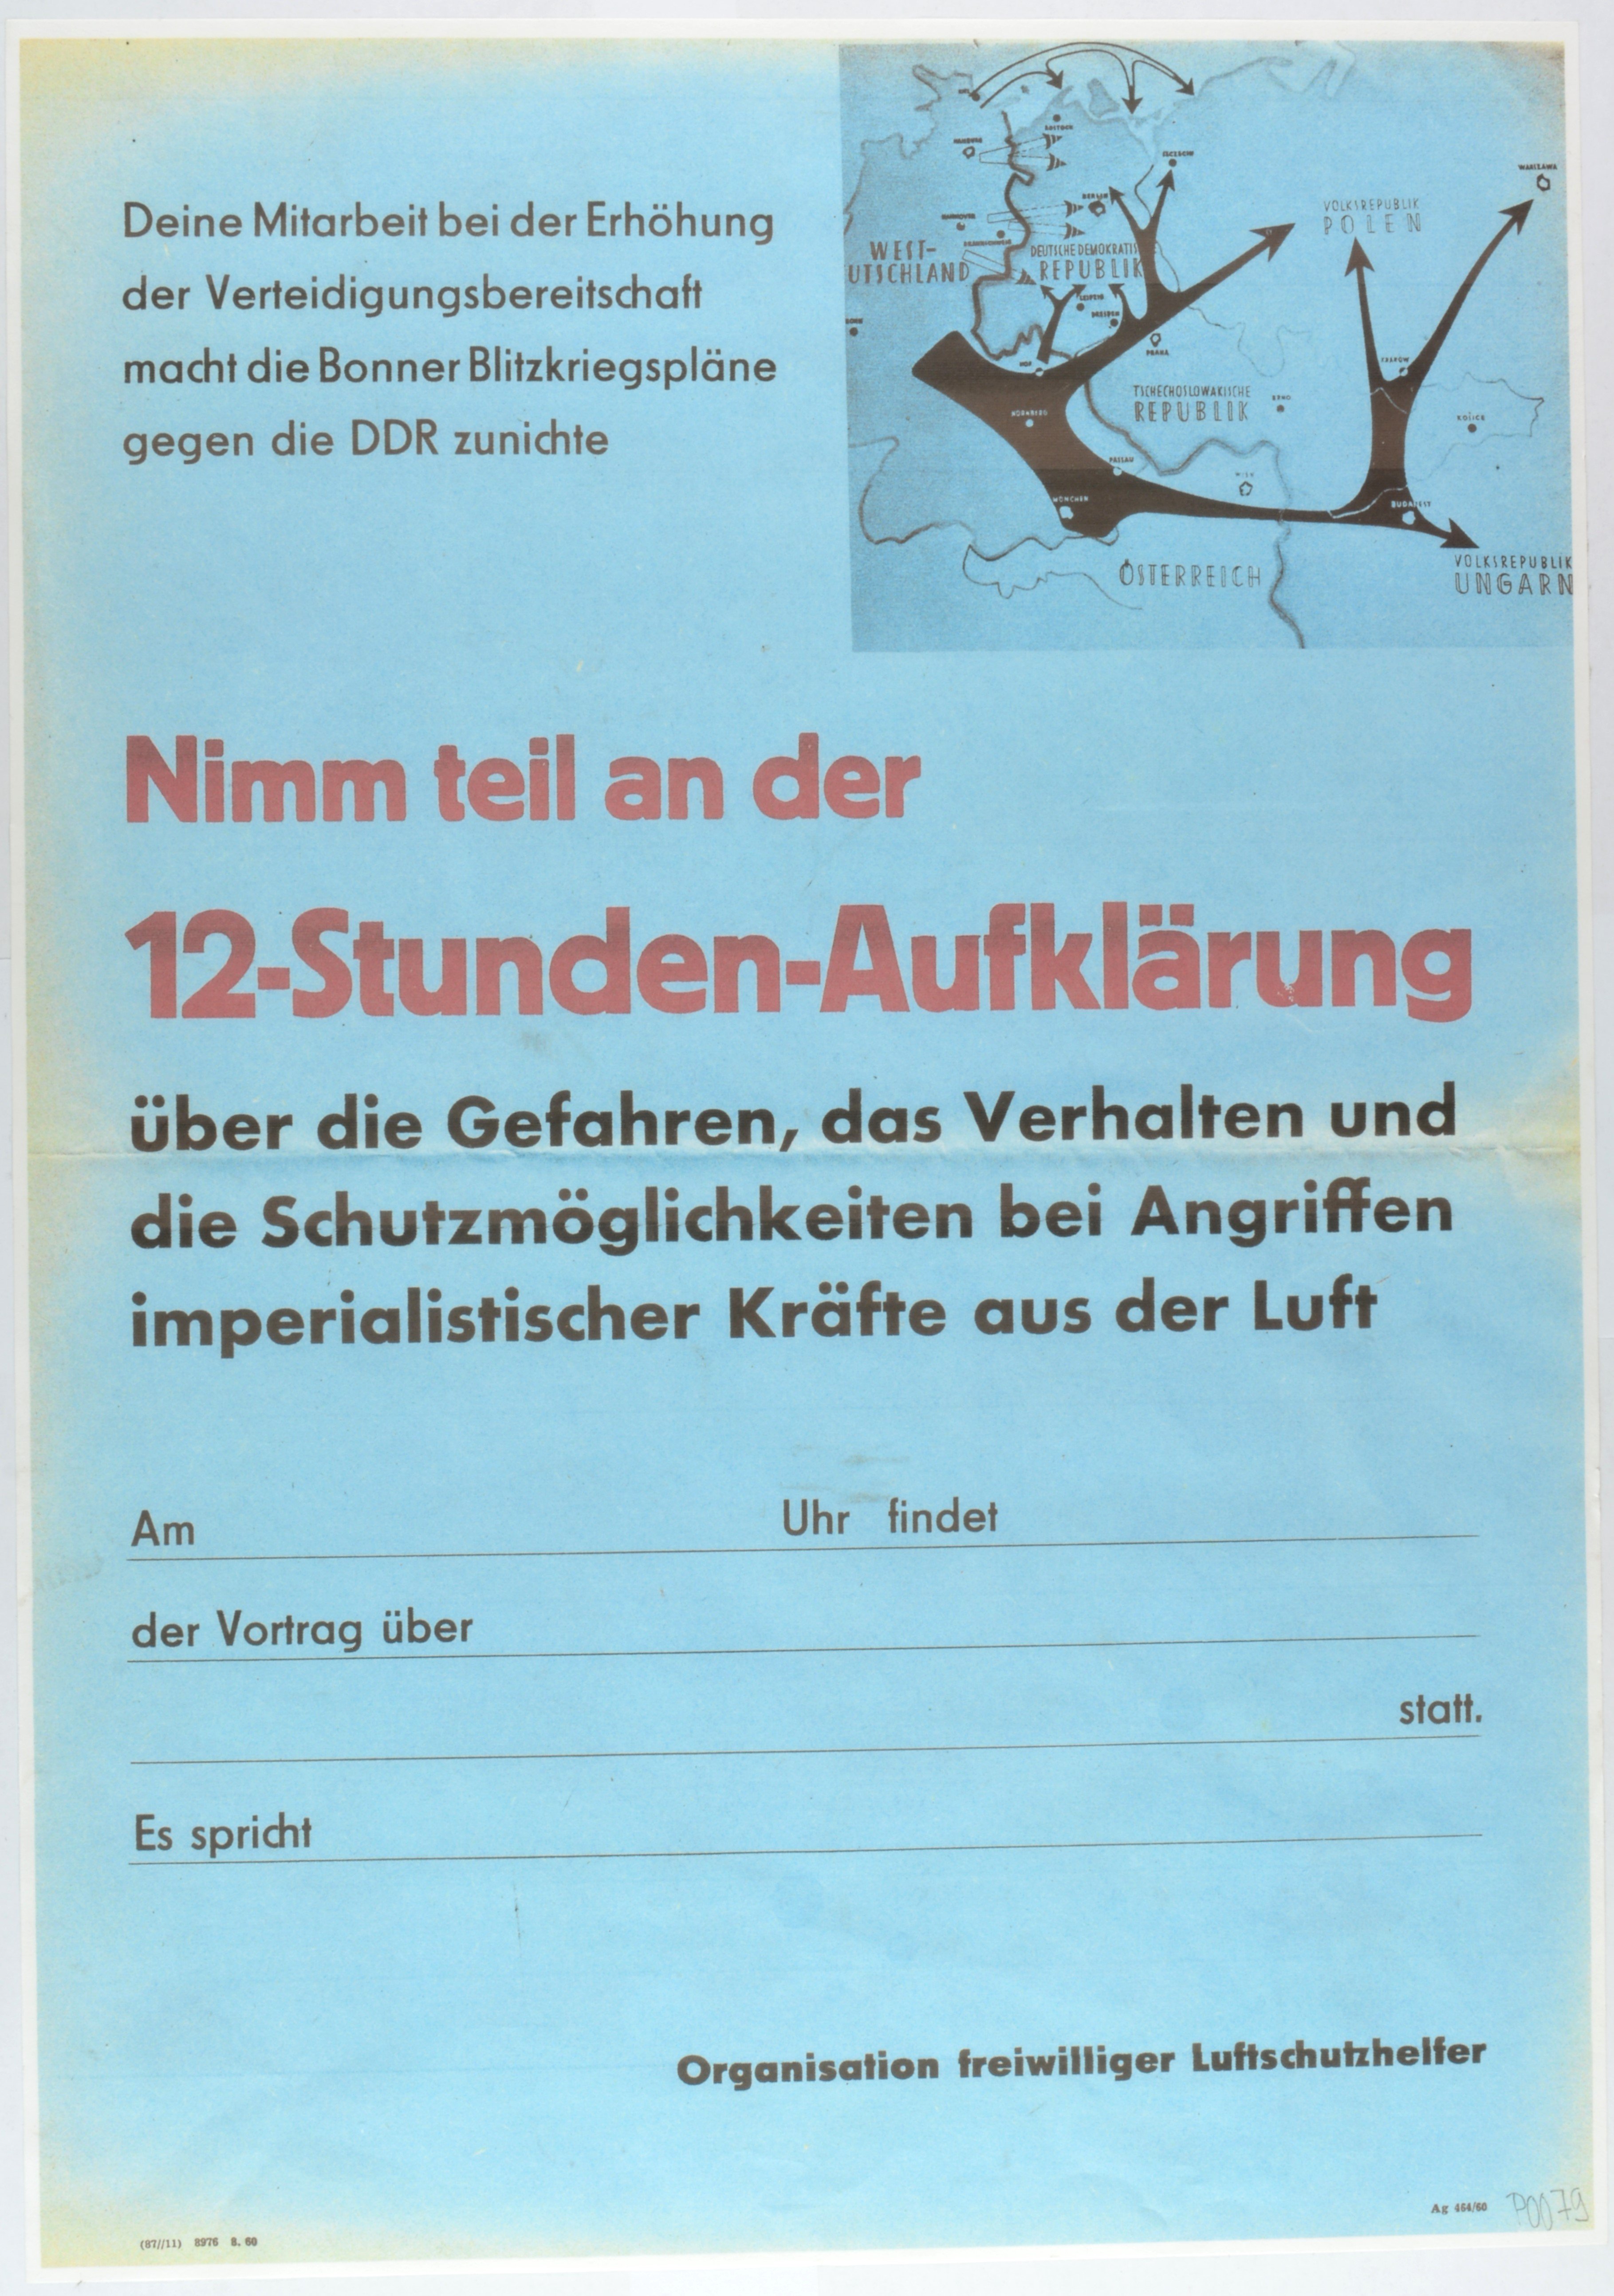 Plakat: Aufruf zur Teilnahme an einer Aufklärungsübung (DDR Geschichtsmuseum im Dokumentationszentrum Perleberg CC BY-SA)